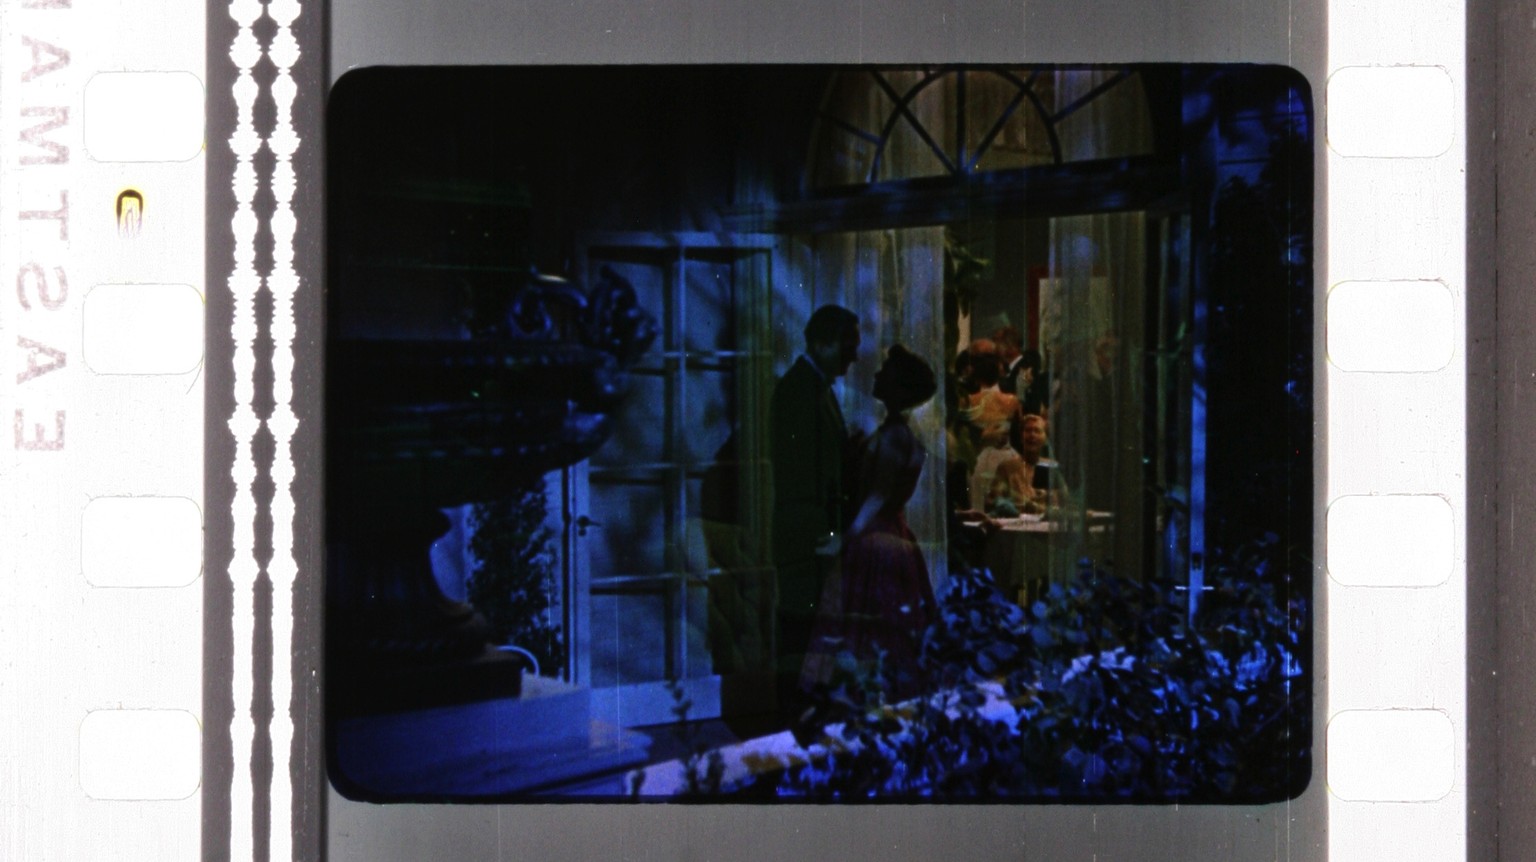 Szene aus «All that Heaven Allows» von Douglas Sirk, mit dem für Sirk typischen Blau.